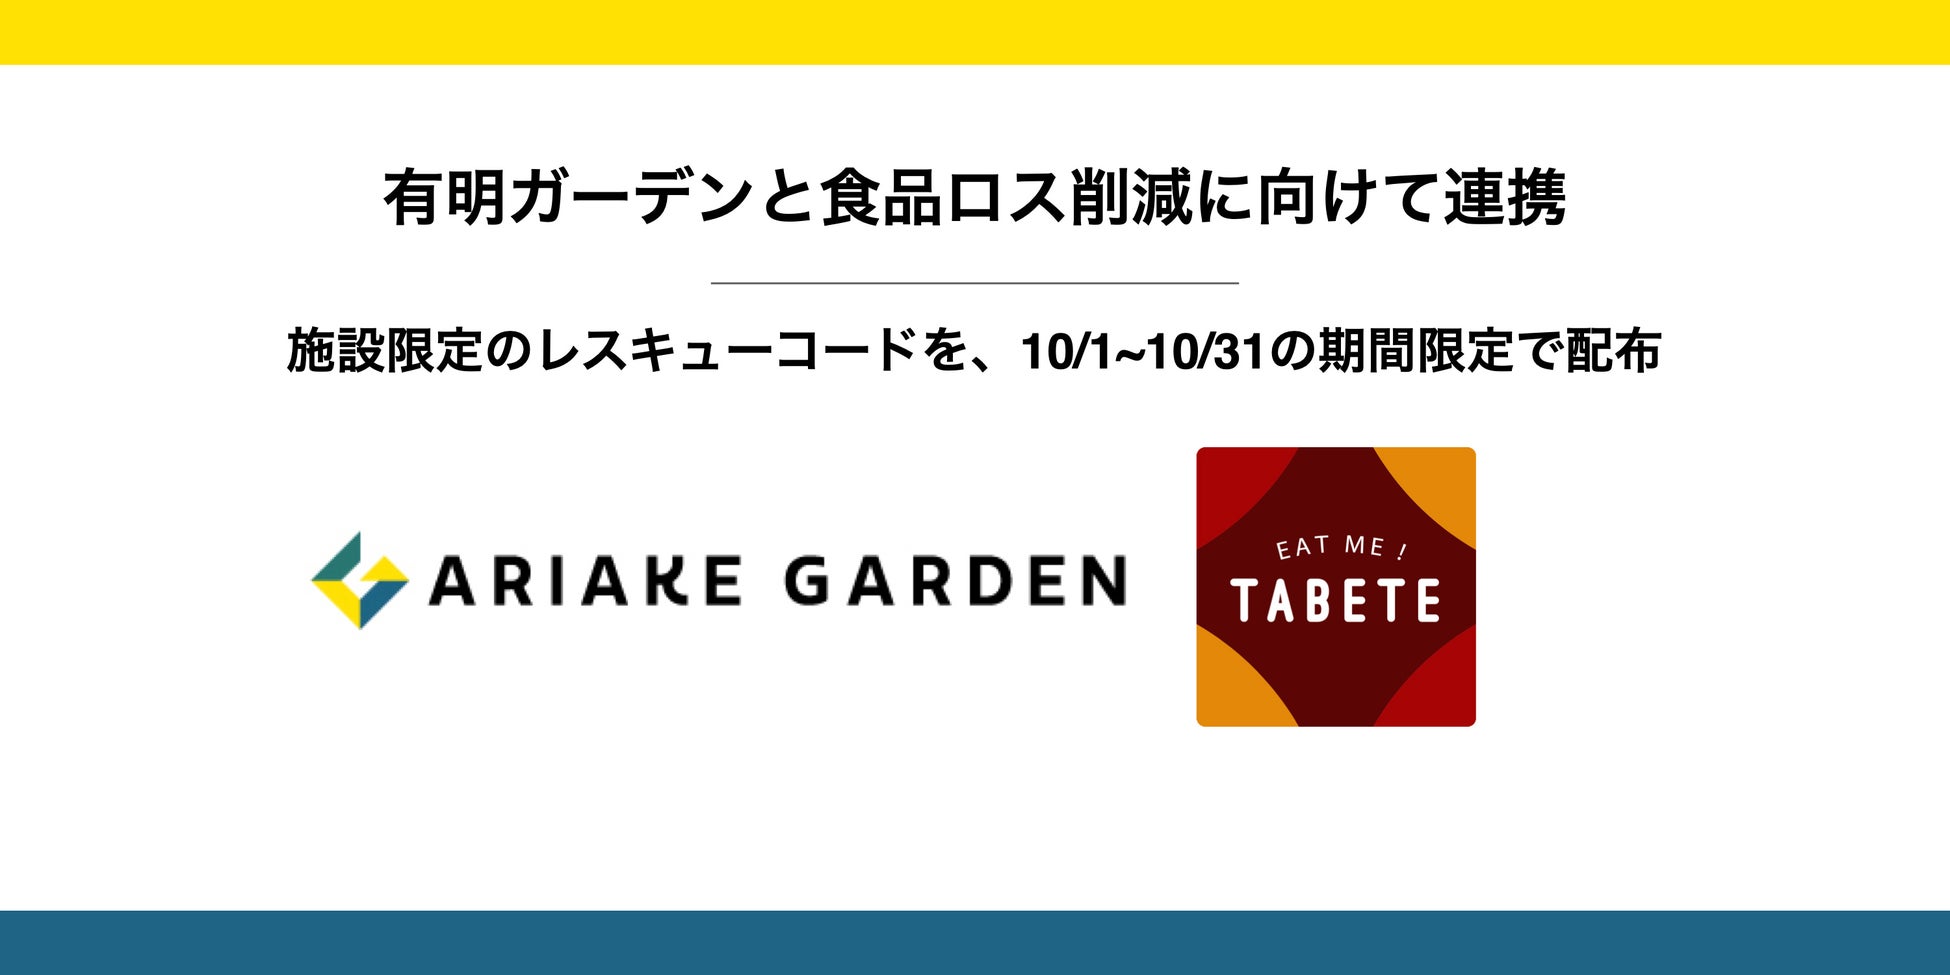  有明ガーデンと TABETE が施設内食品ロス削減に向けて連携。10 月 1 日(土)〜10 月 31 日(月)の期間中使用できる限定レスキューコードを配布。のサブ画像1